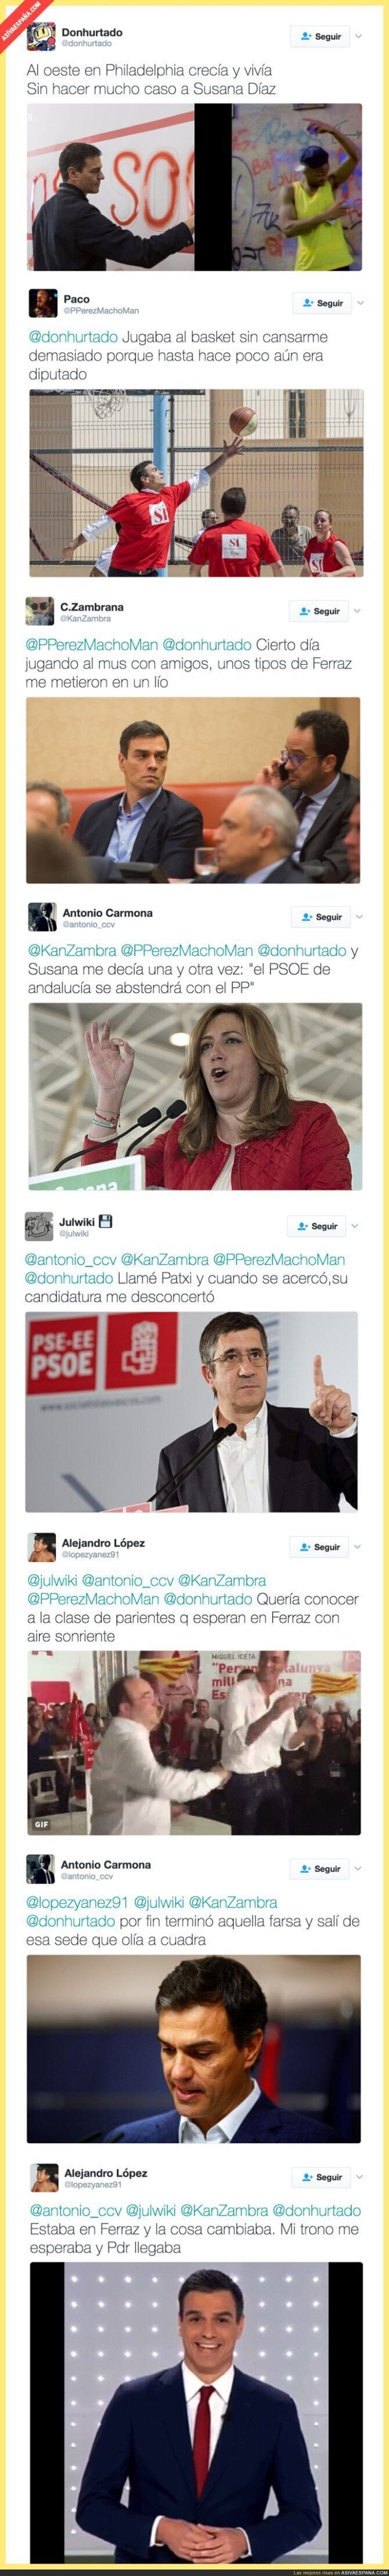 Crean en Twitter la historia del PSOE y Pedro Sánchez al estilo del Príncipe de Bel-Air